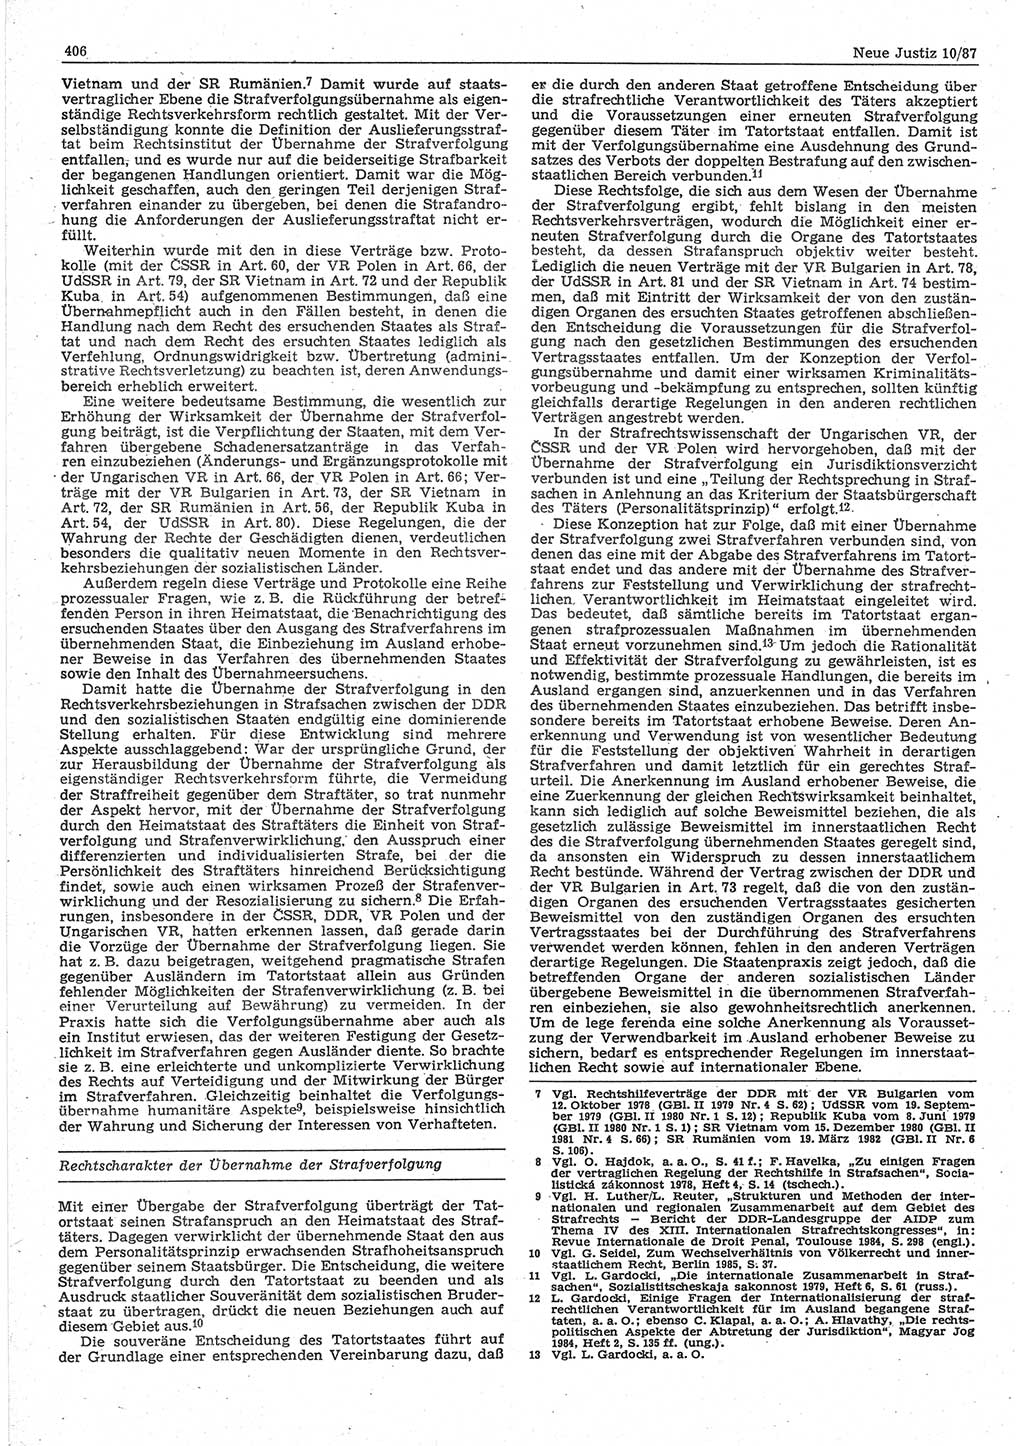 Neue Justiz (NJ), Zeitschrift für sozialistisches Recht und Gesetzlichkeit [Deutsche Demokratische Republik (DDR)], 41. Jahrgang 1987, Seite 406 (NJ DDR 1987, S. 406)